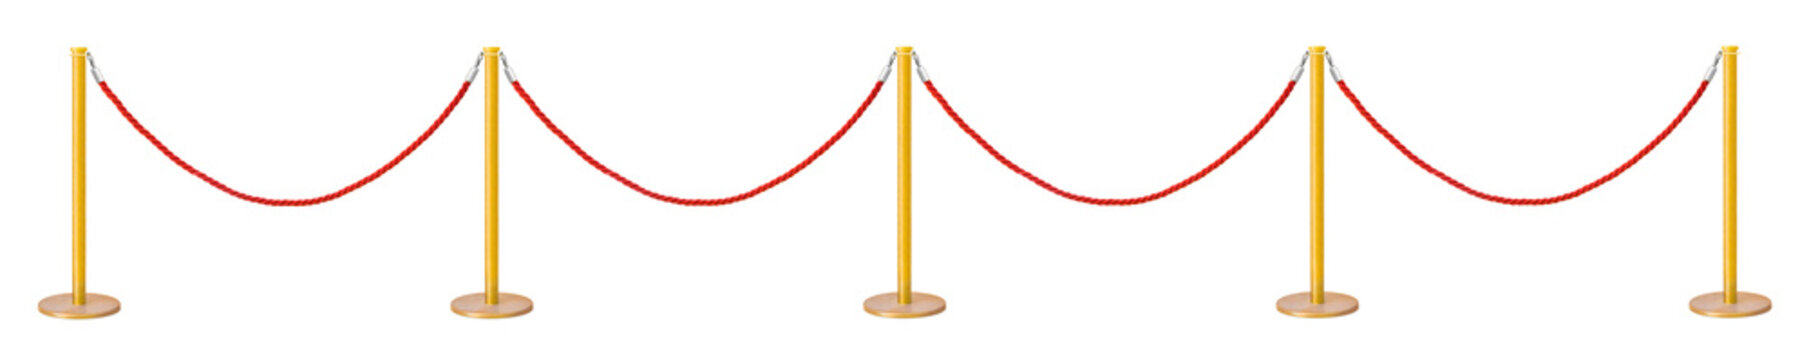 Golden Velvet Rope Barrier